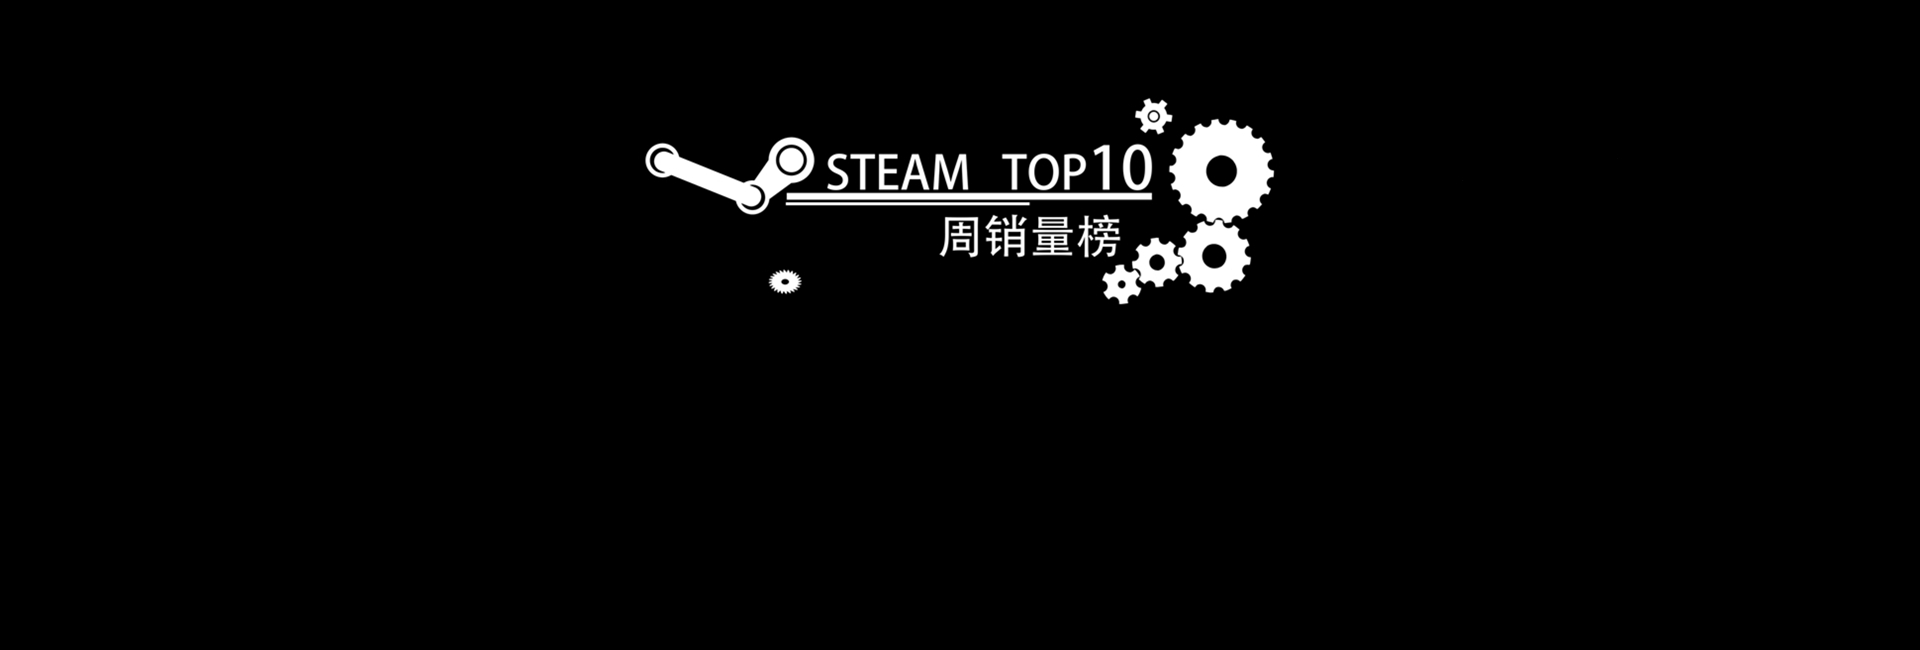 Steam周销量排行资讯合集